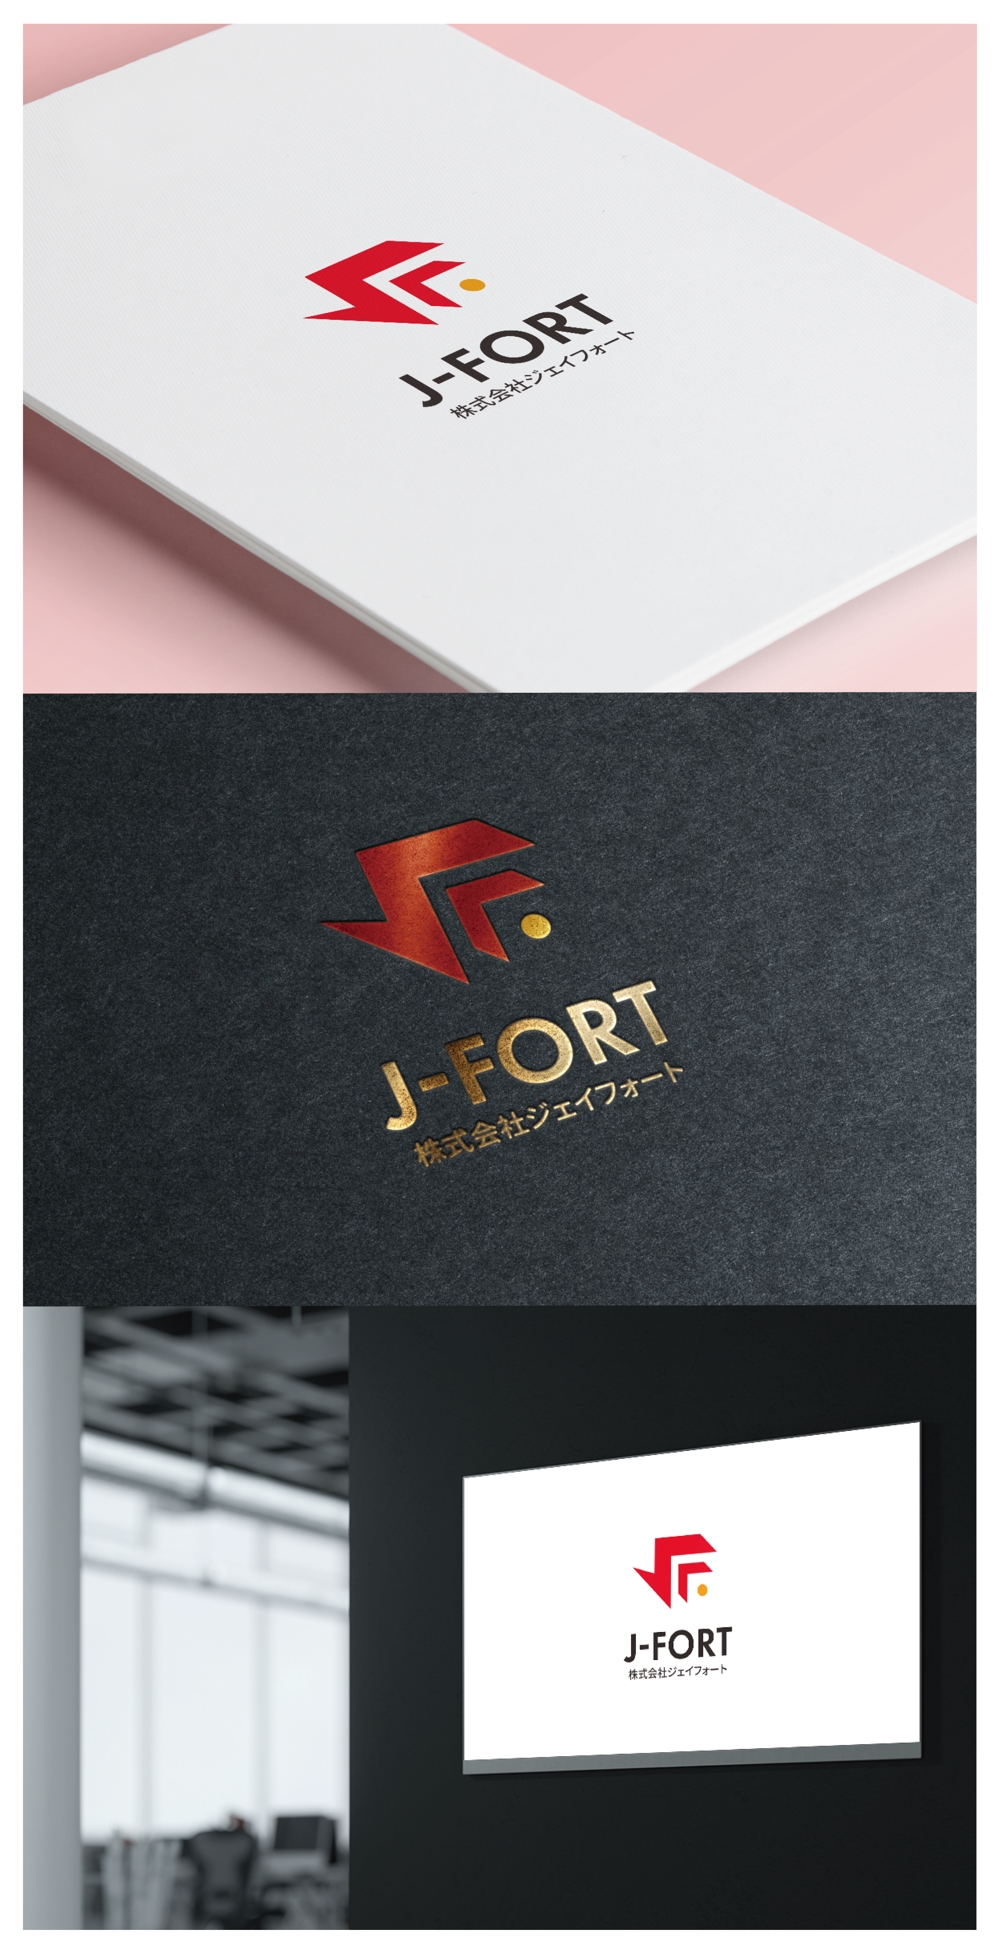 J-FORT_logo02_01.jpg